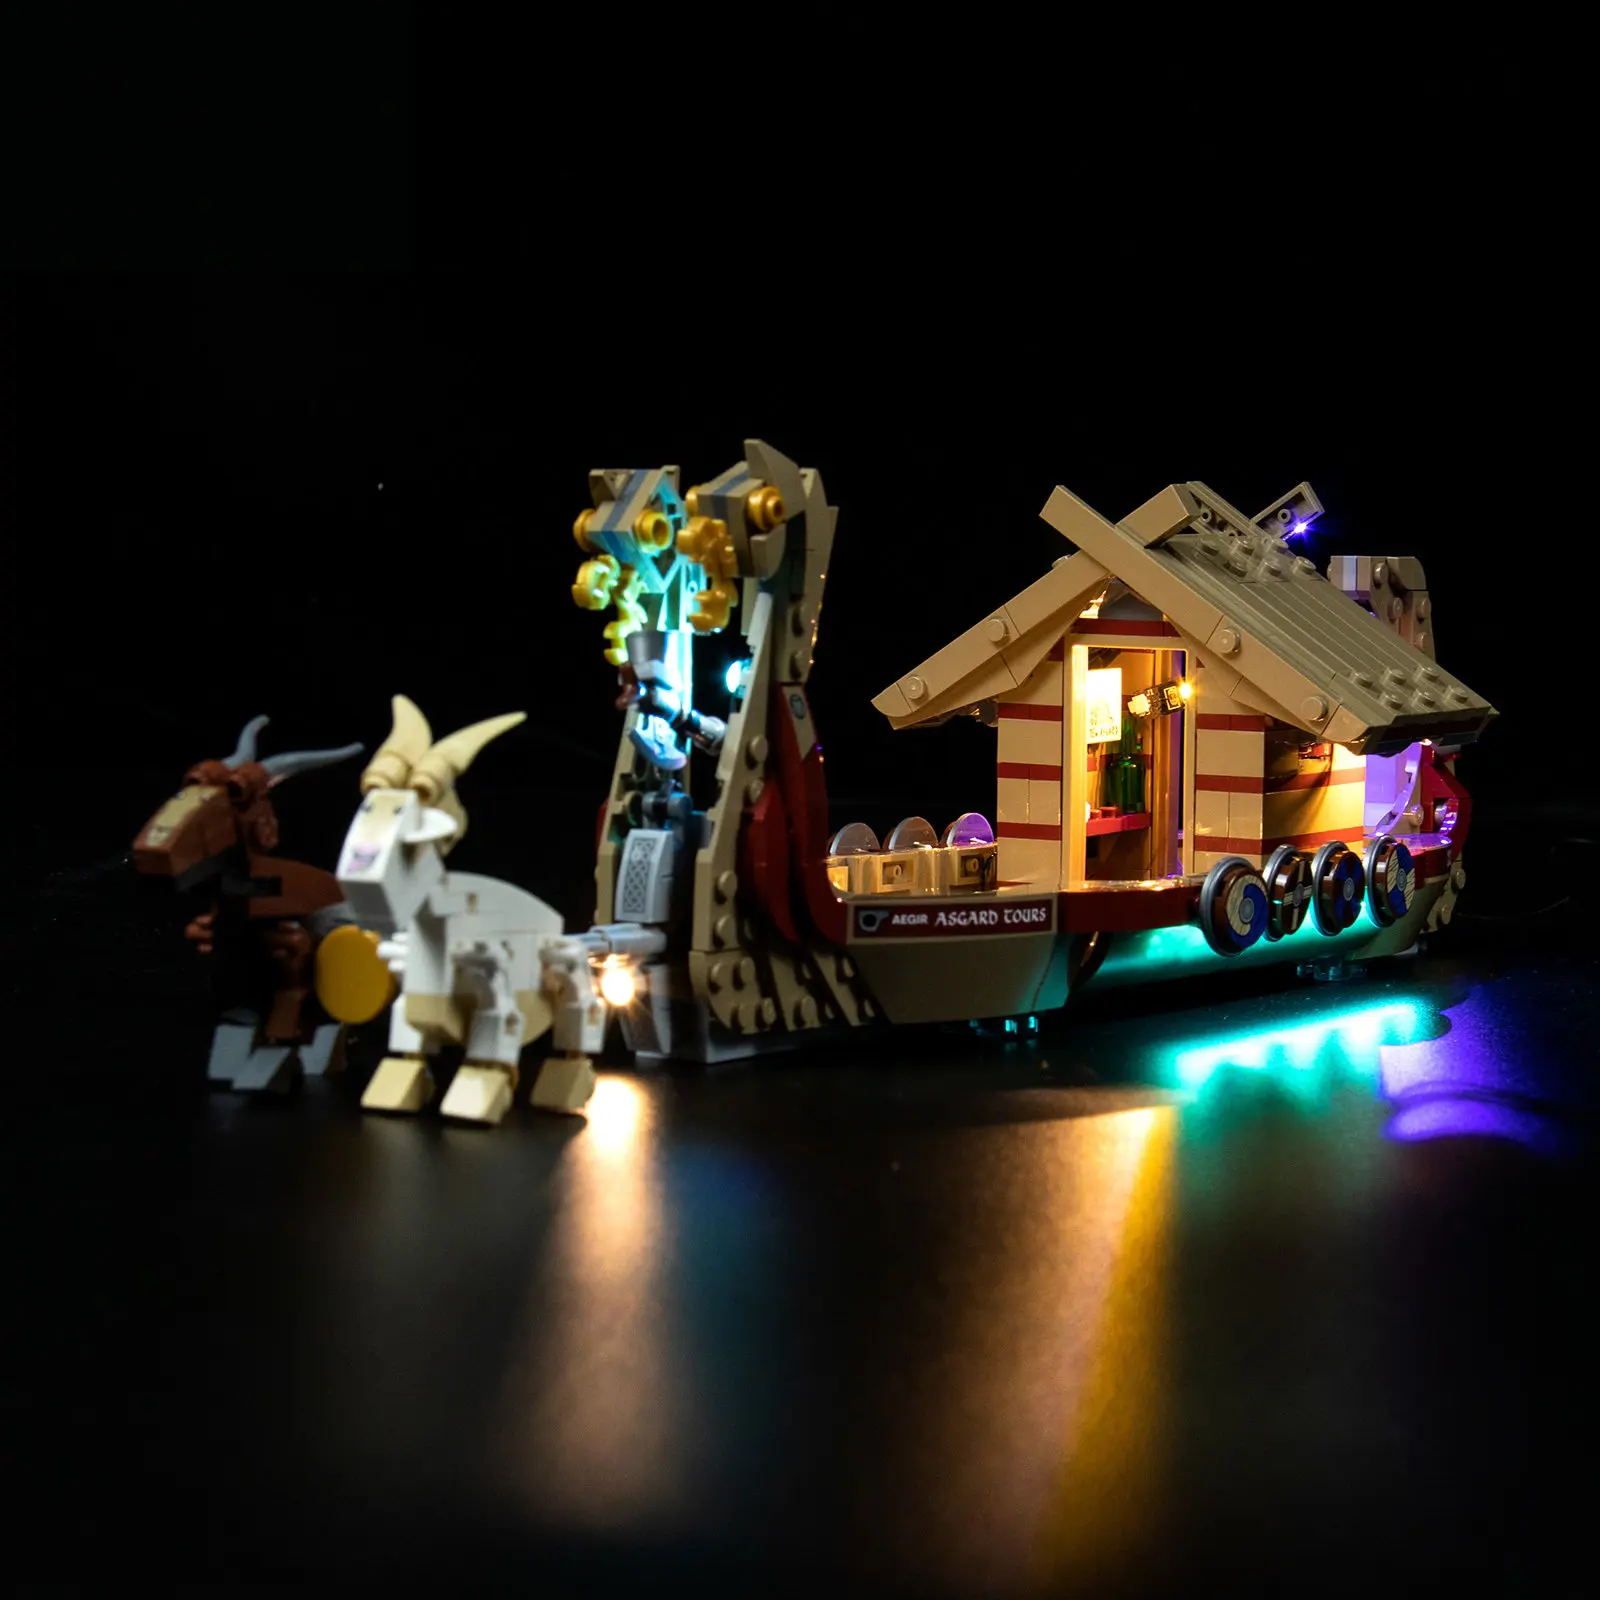 

LED Light Kit for 76208 The Goat Boat Building Blocks Set (NOT Include the Model) Bricks Toys for Children